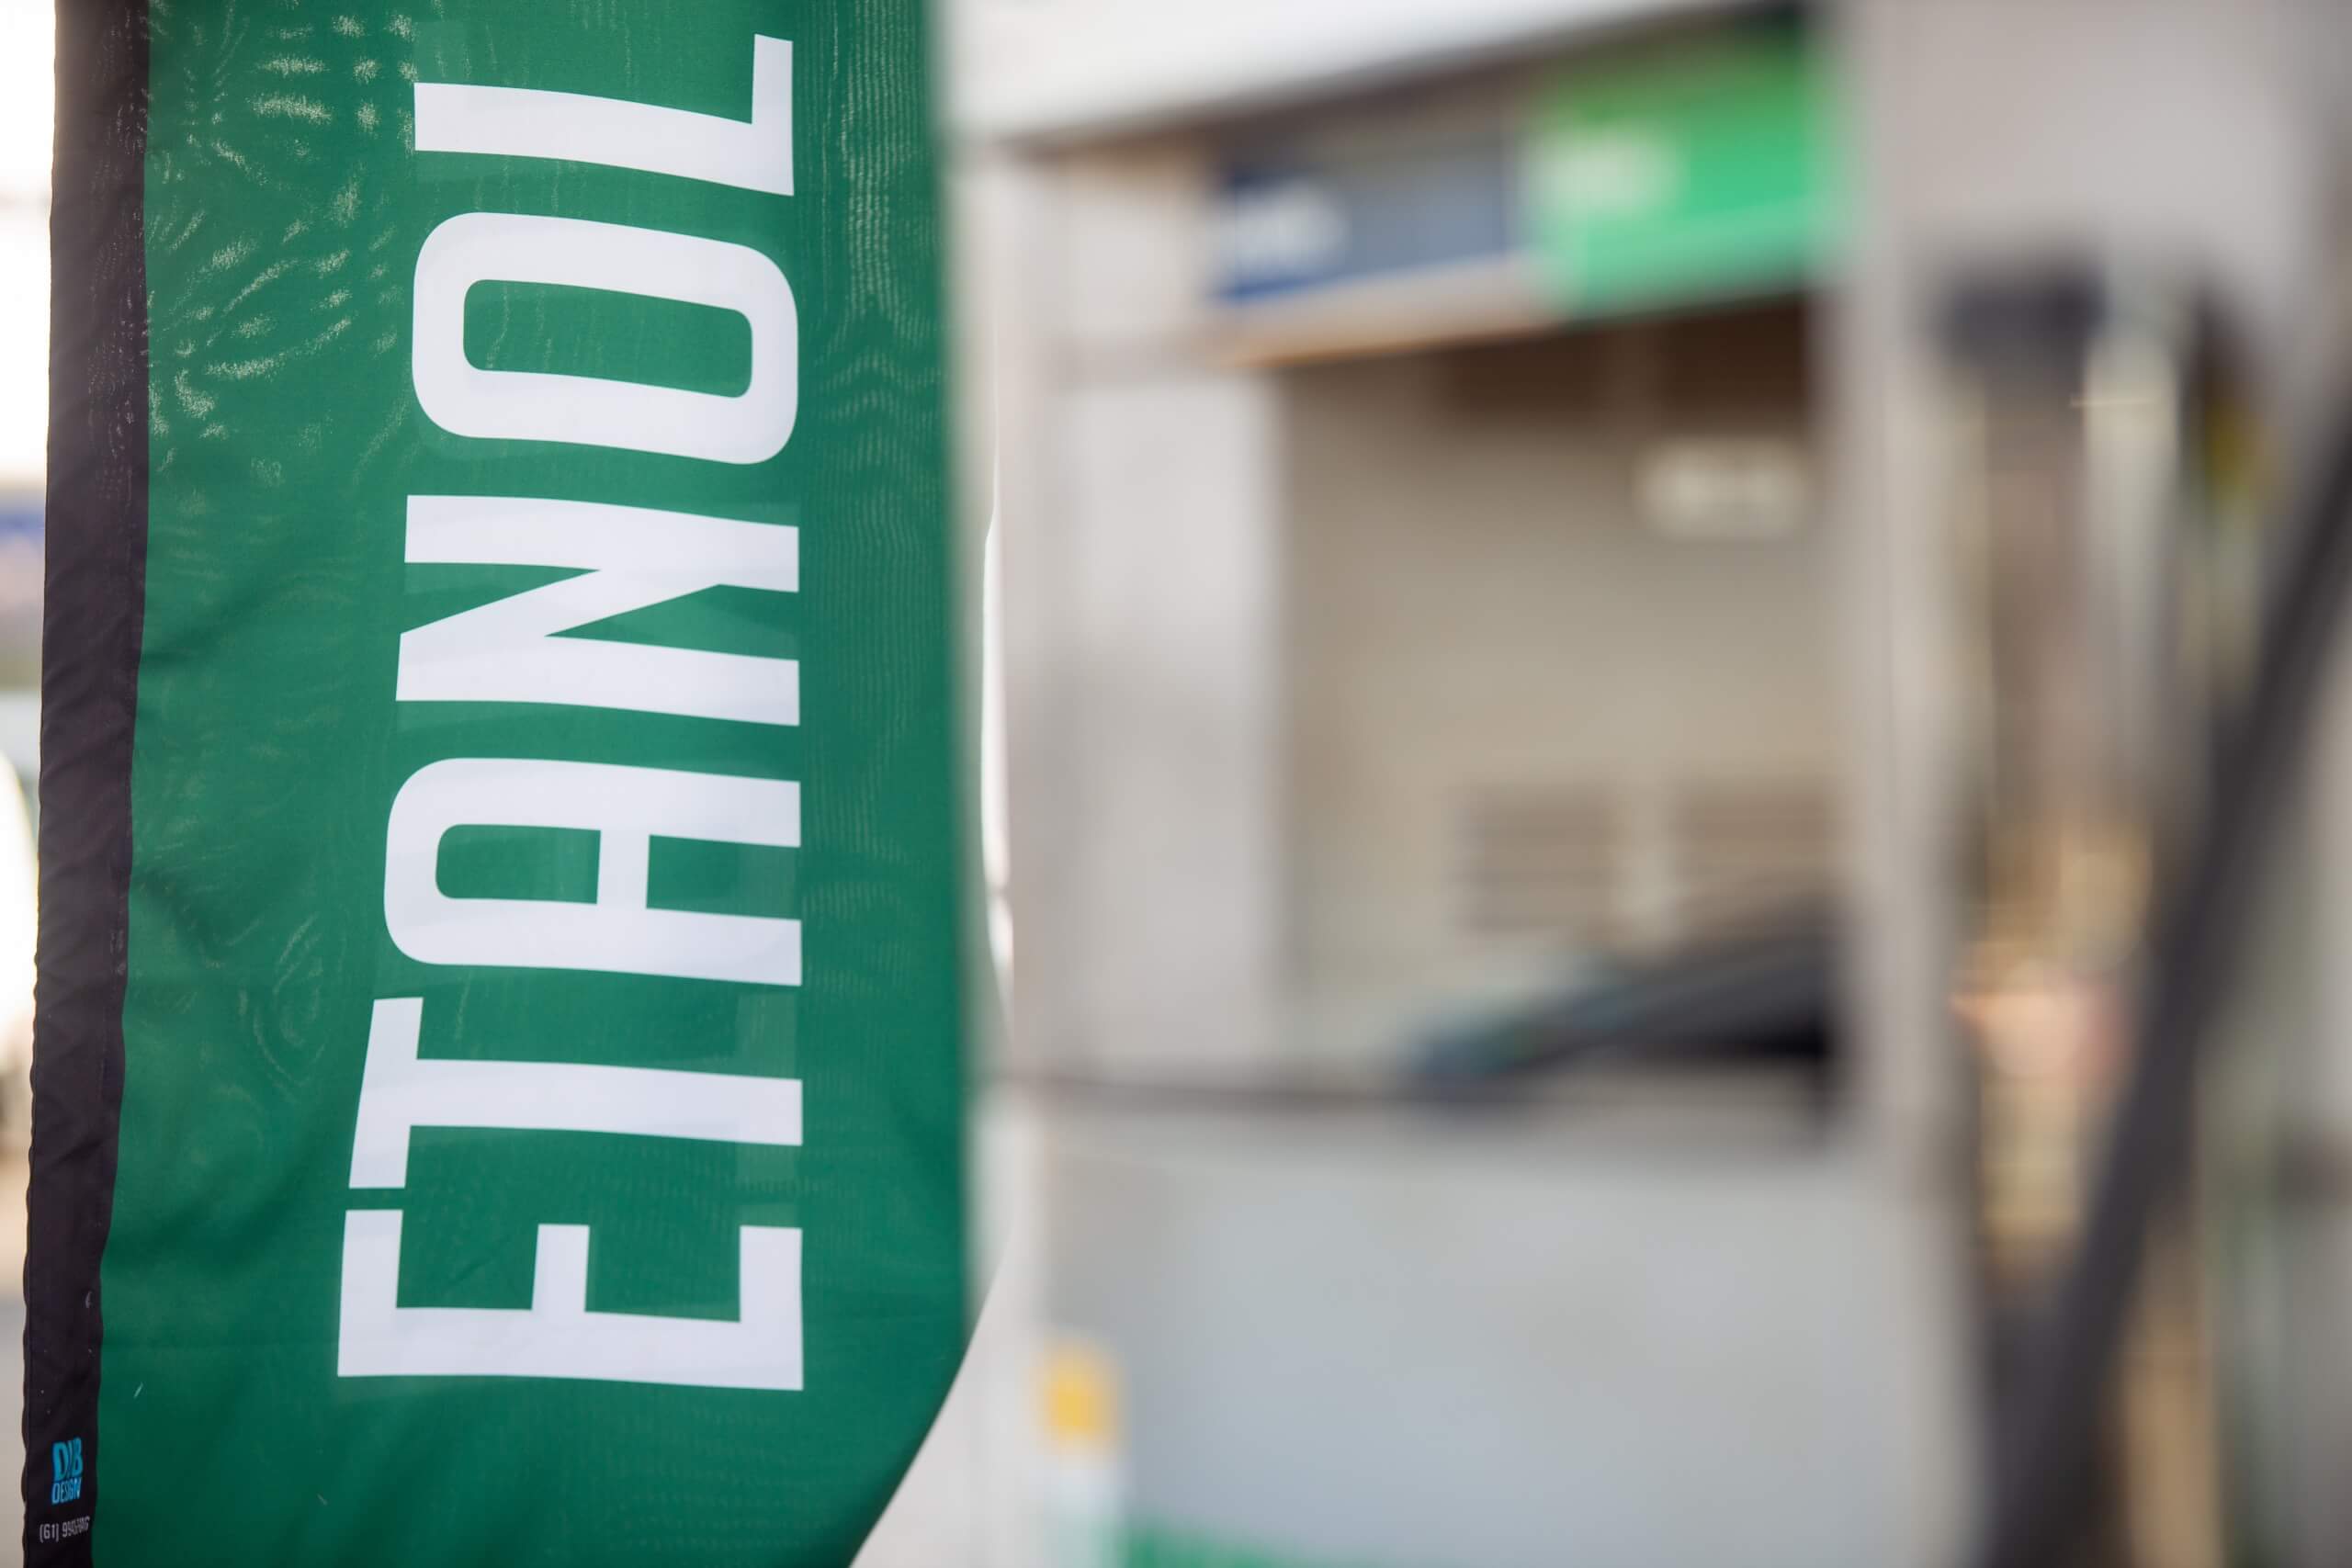 Venda de etanol anidro tem alta de 18,17% na primeira quinzena de fevereiro